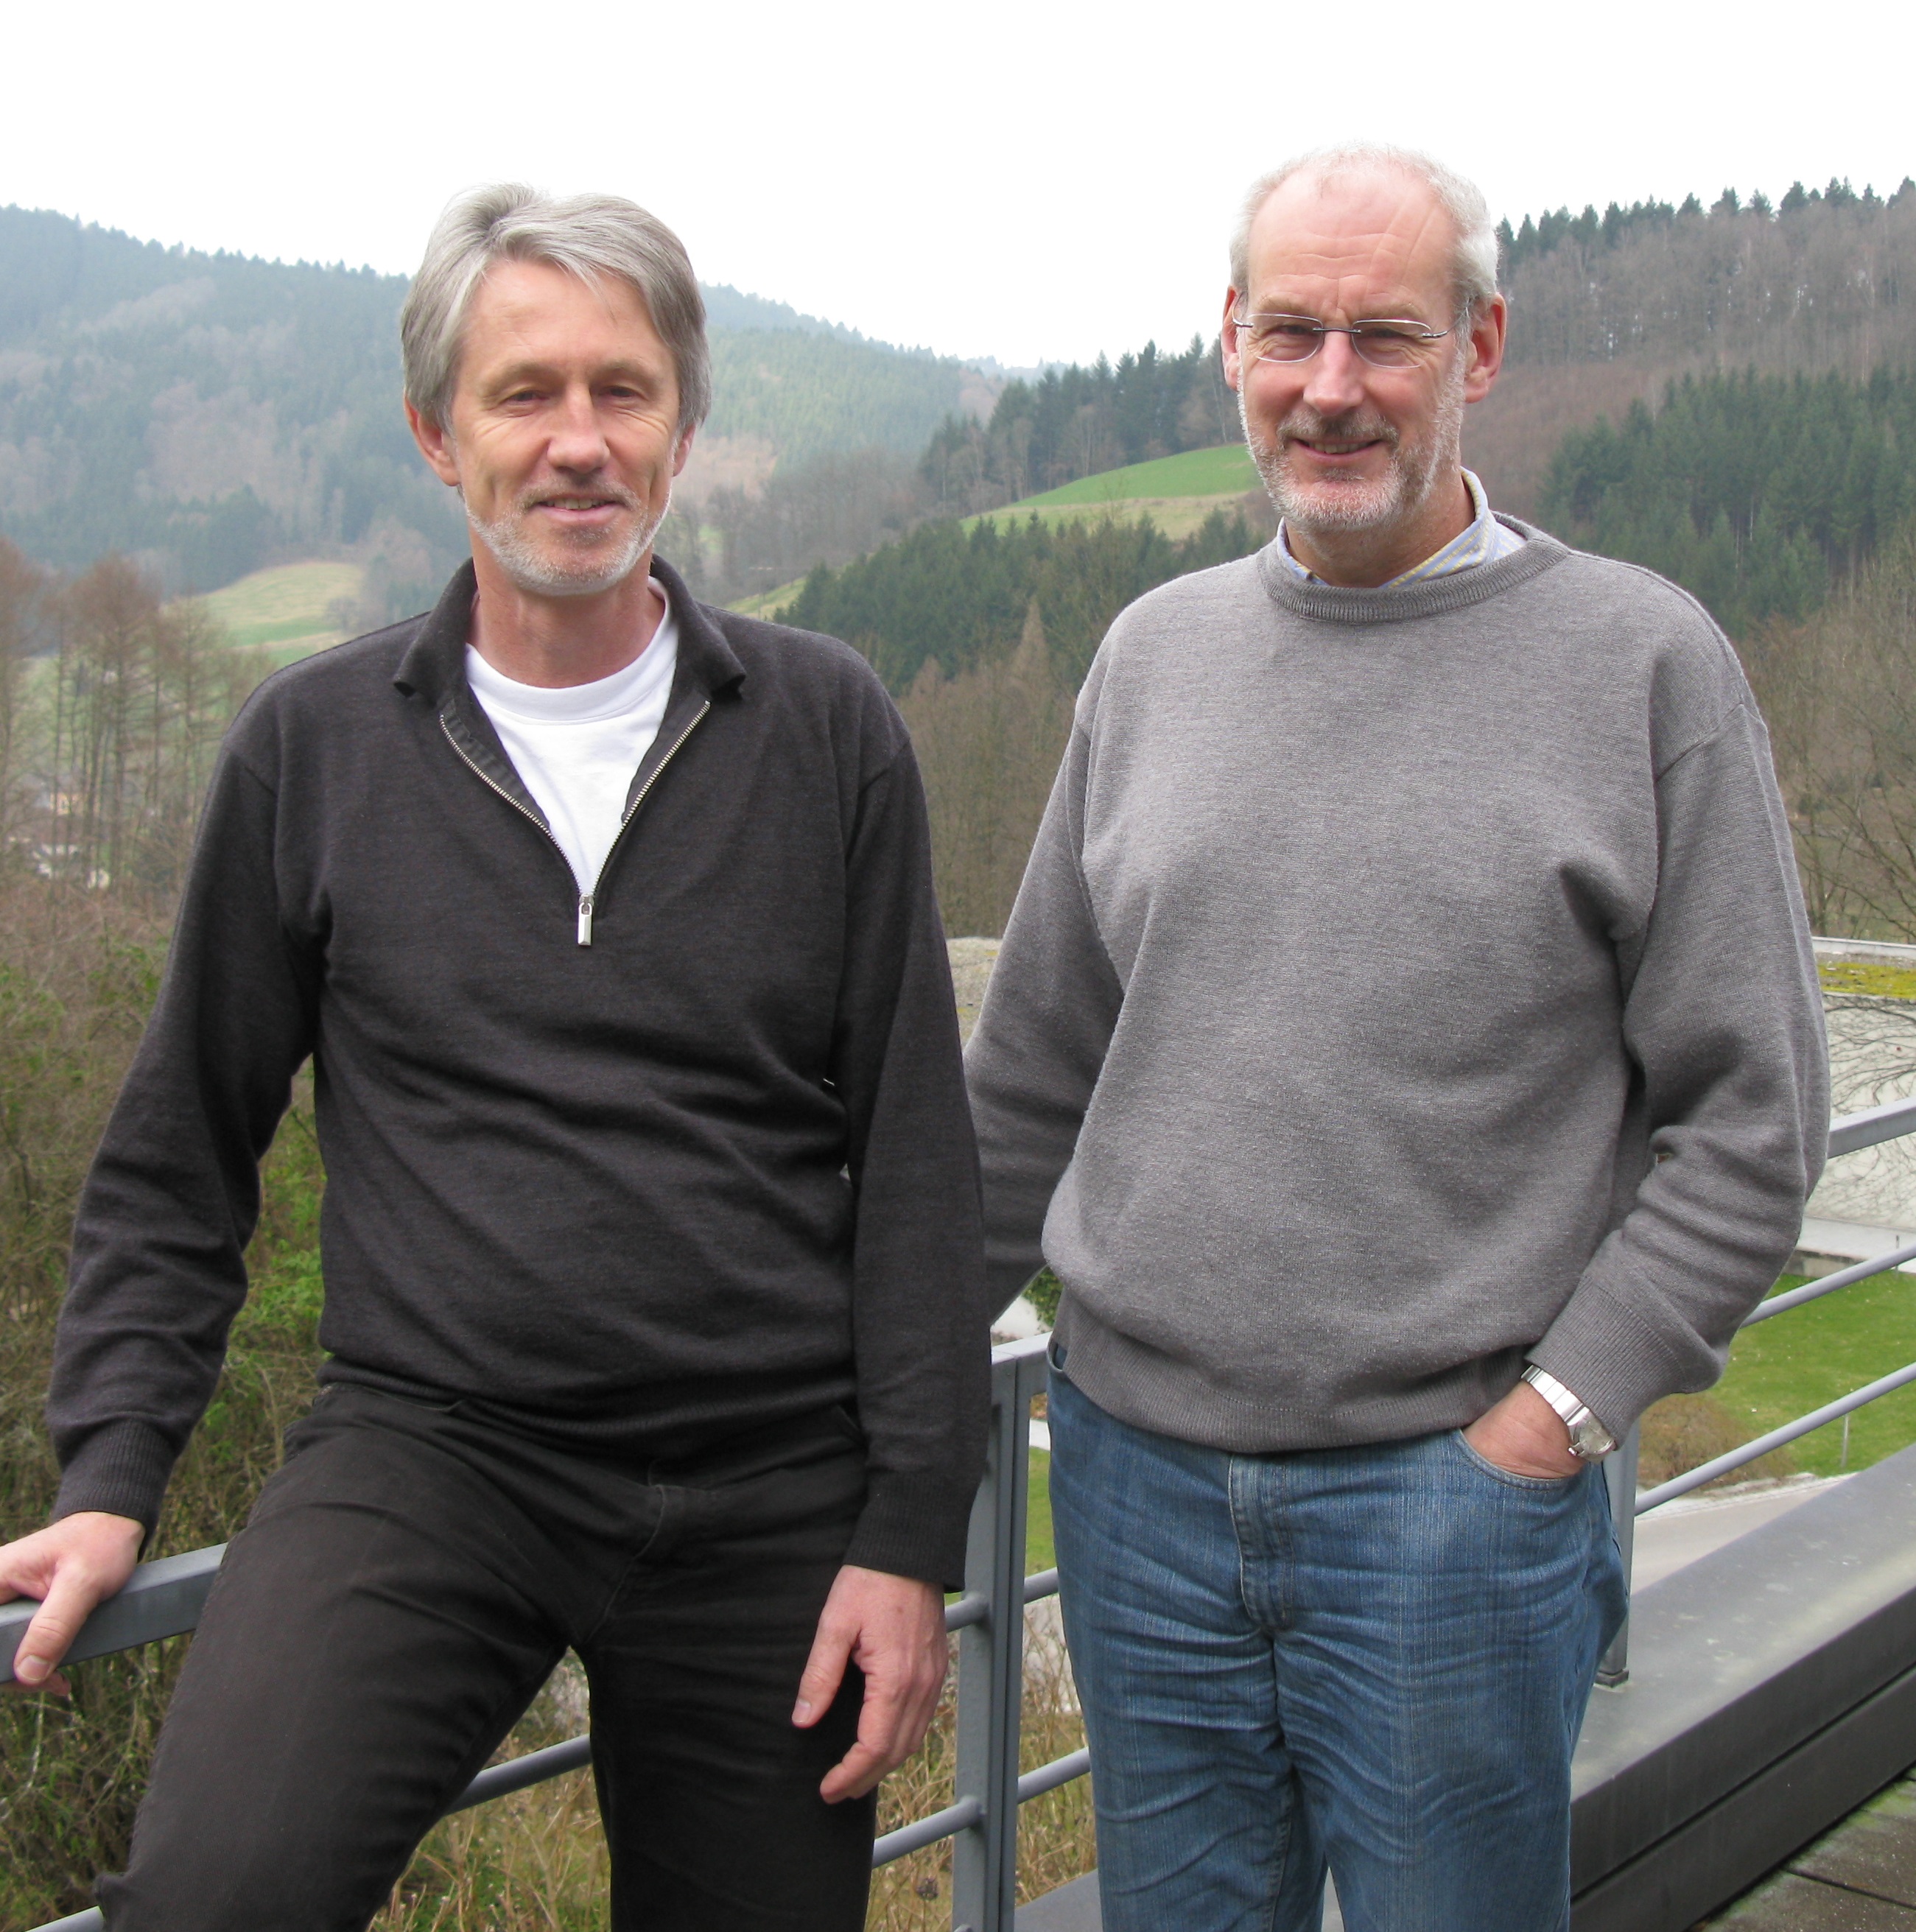 image: Willi Sauerbrei und Patrick Royston 2009